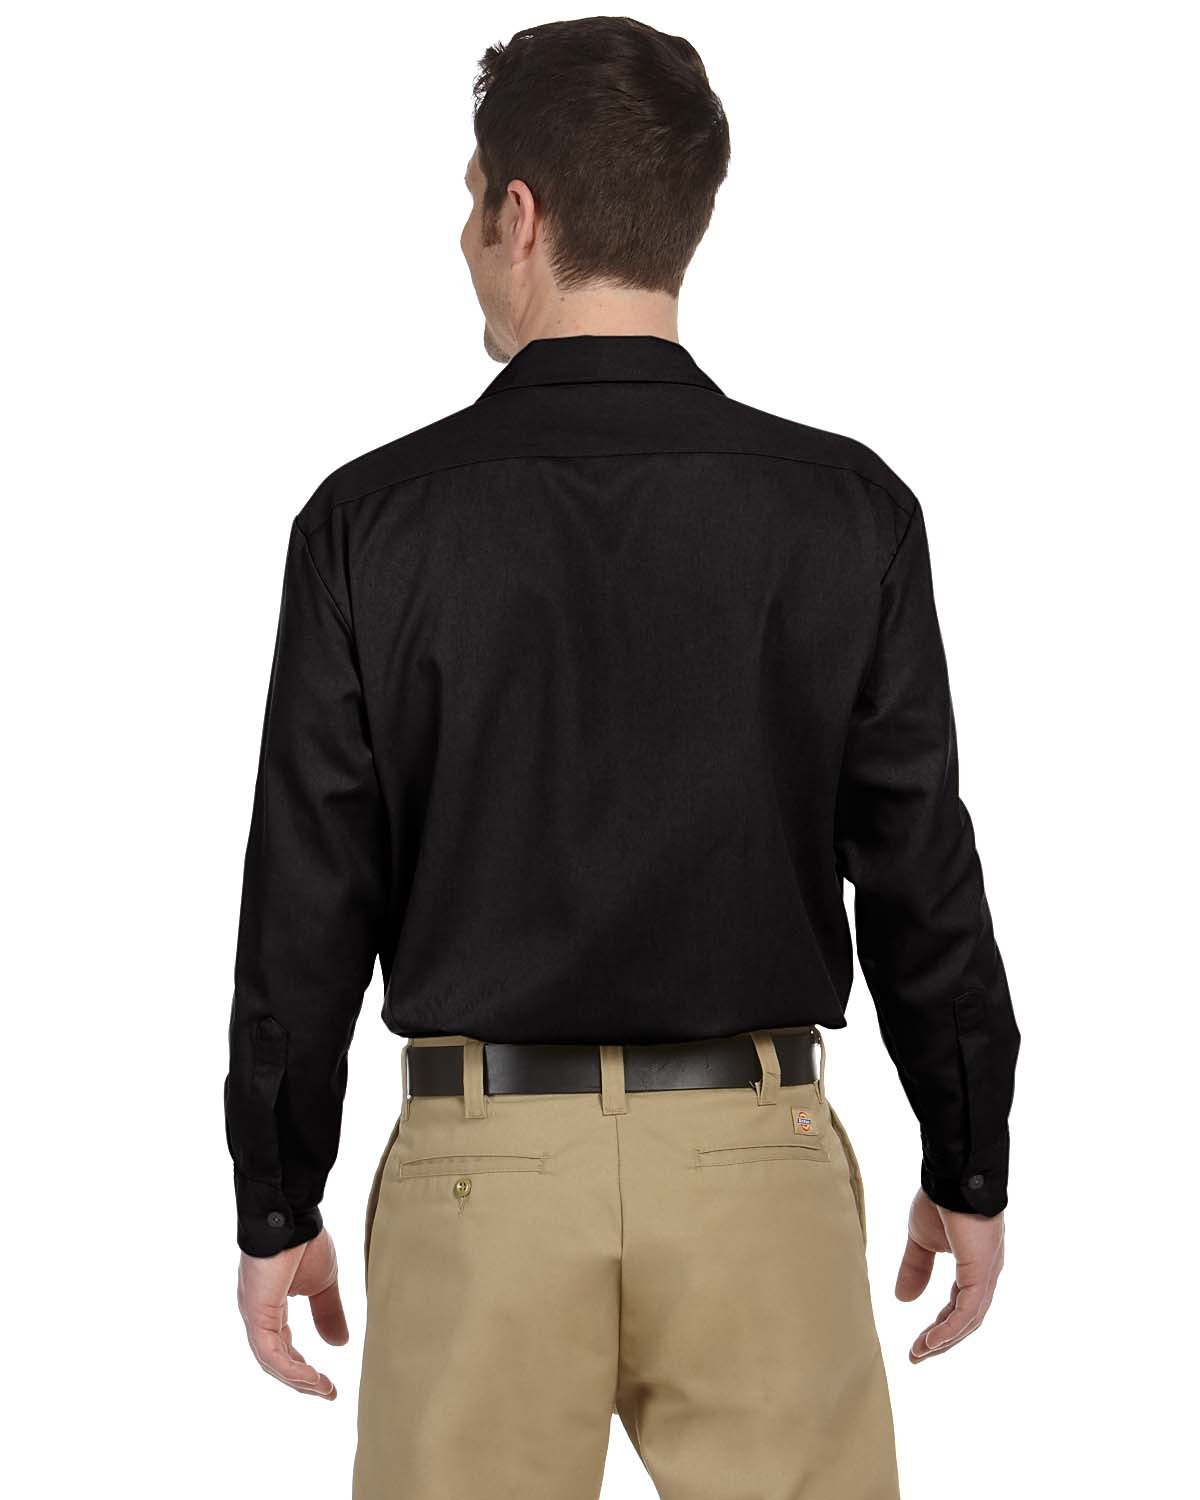 Khaki Pants Black Shirt | TikTok